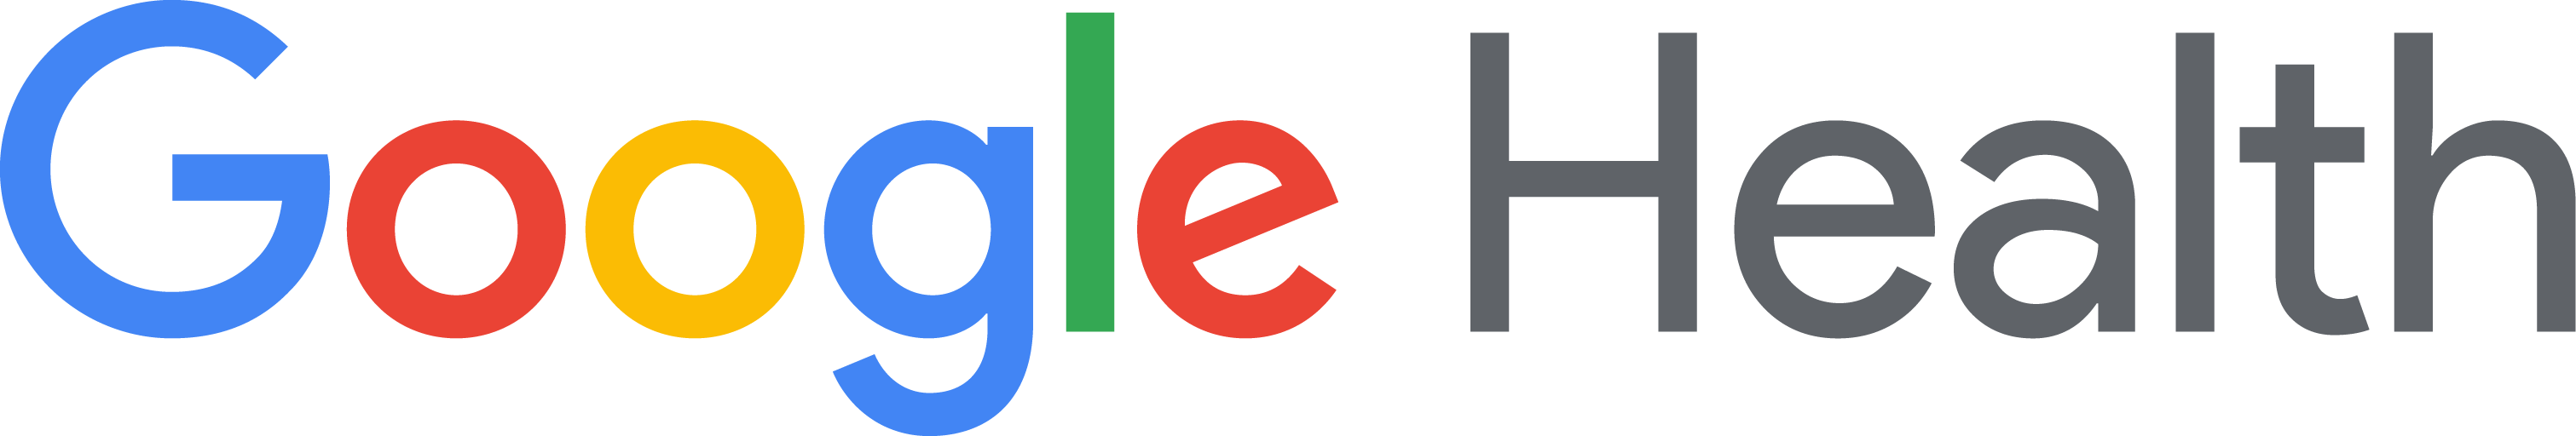 Google Health eStore footer logo